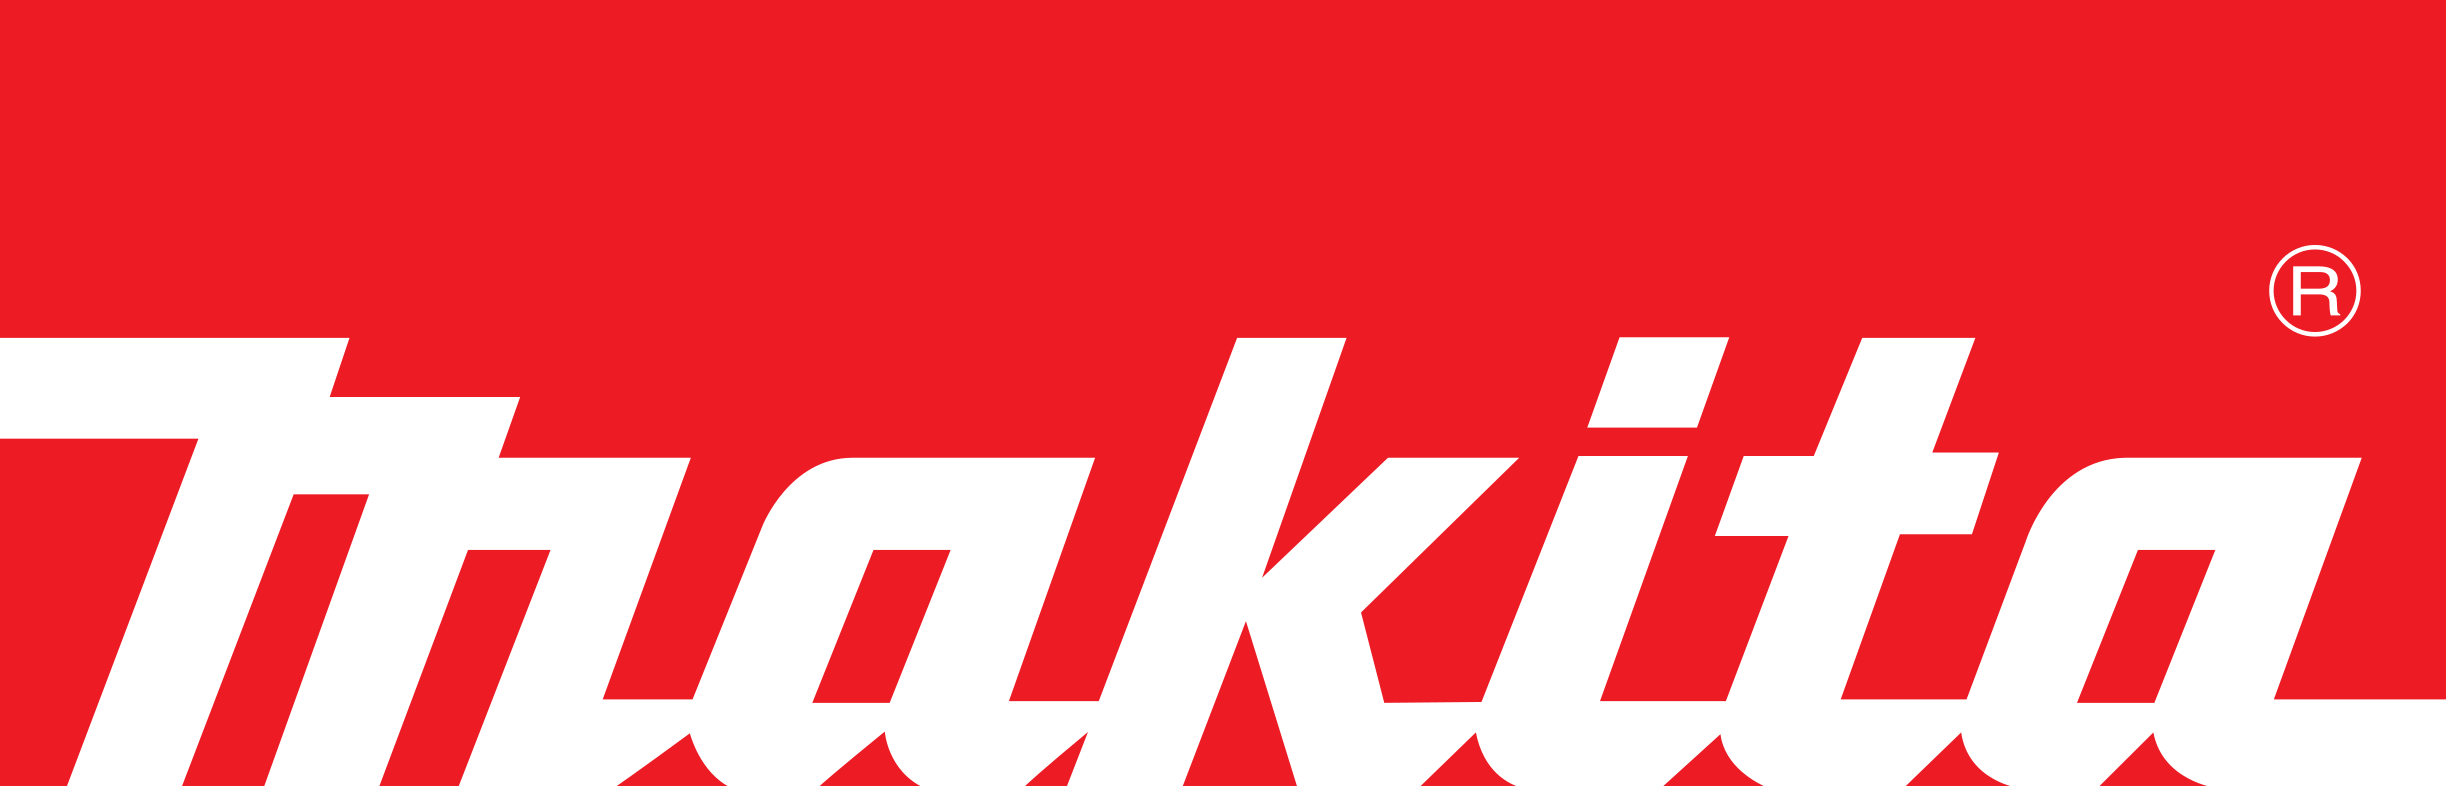 Makita – záruka špičkové zavedené značky | Roberto Marketoplace